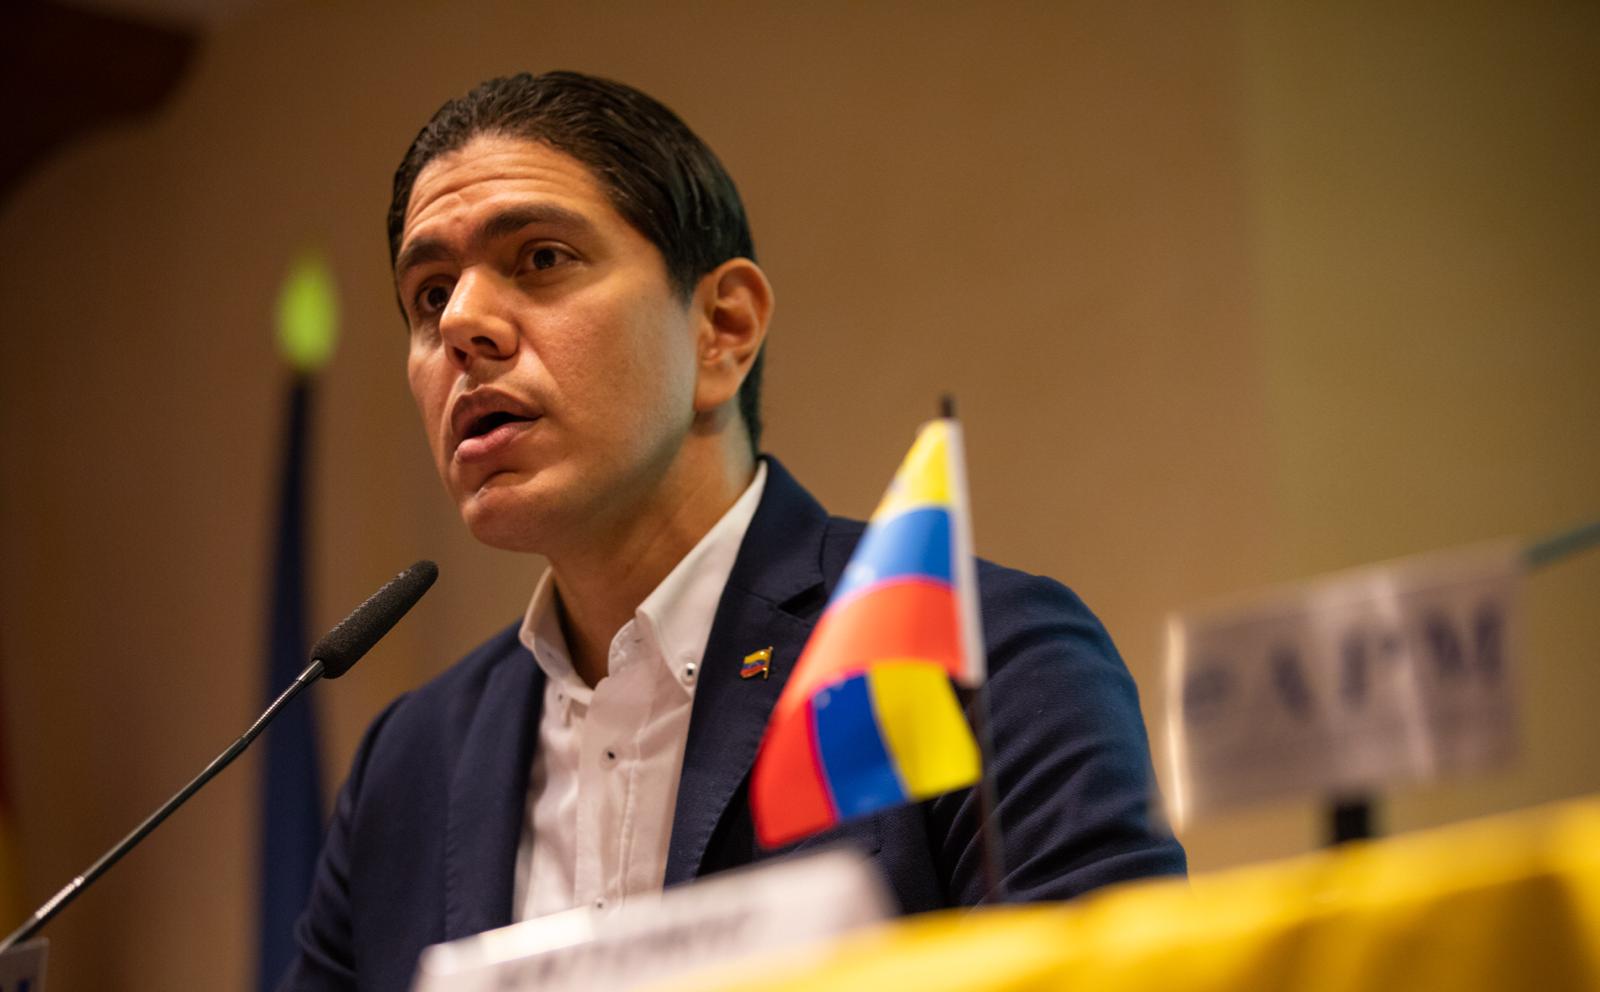 Lester Toledo: No habrá elección libre en Venezuela con Maduro en el poder